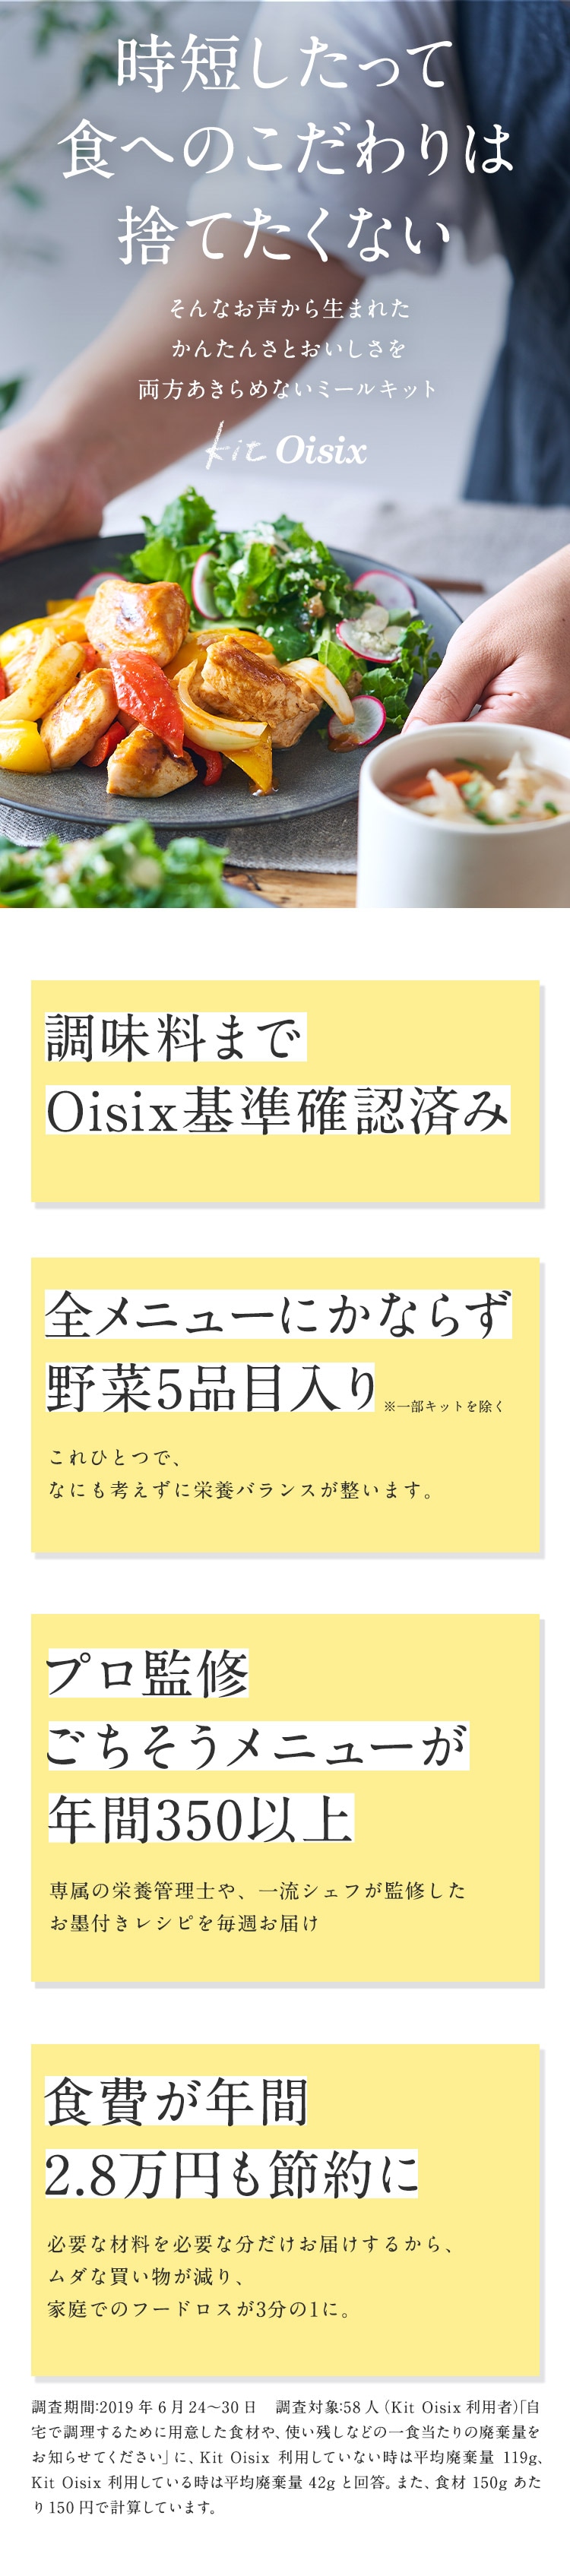 Kit Oisix紹介